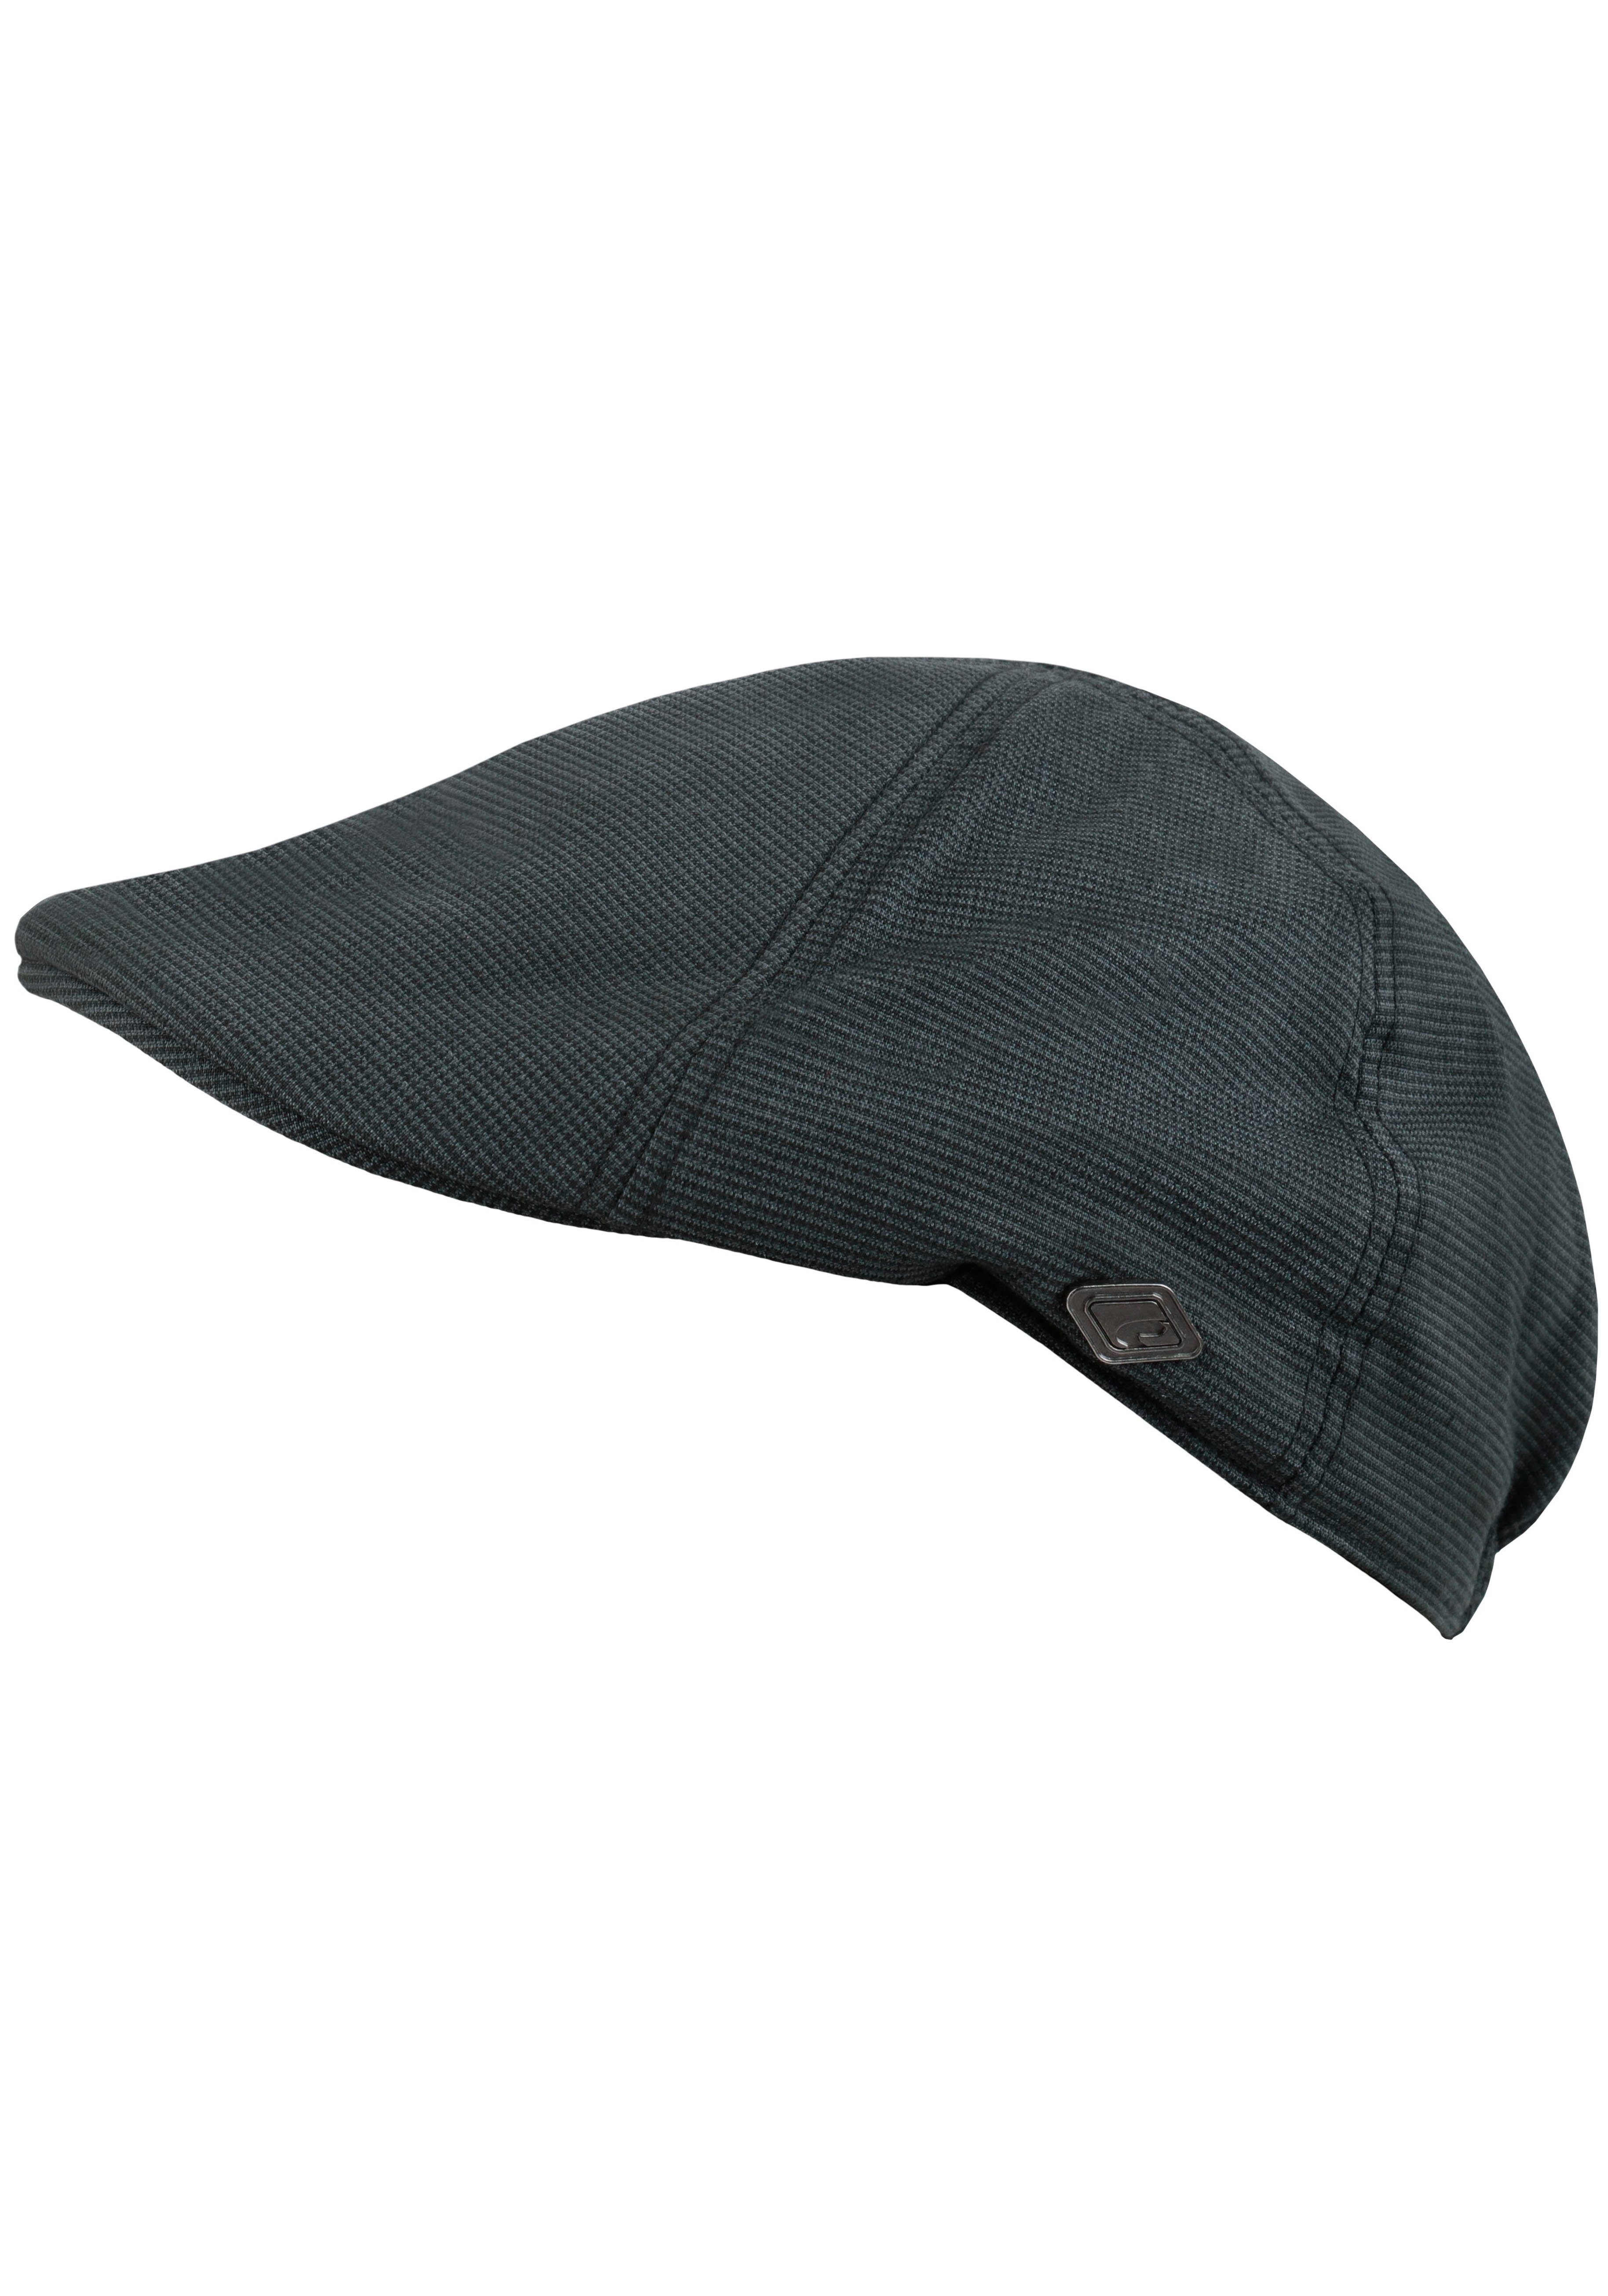 chillouts Schiebermütze Kyoto Hat Flat Cap mit feinem Karomuster grau-schwarz